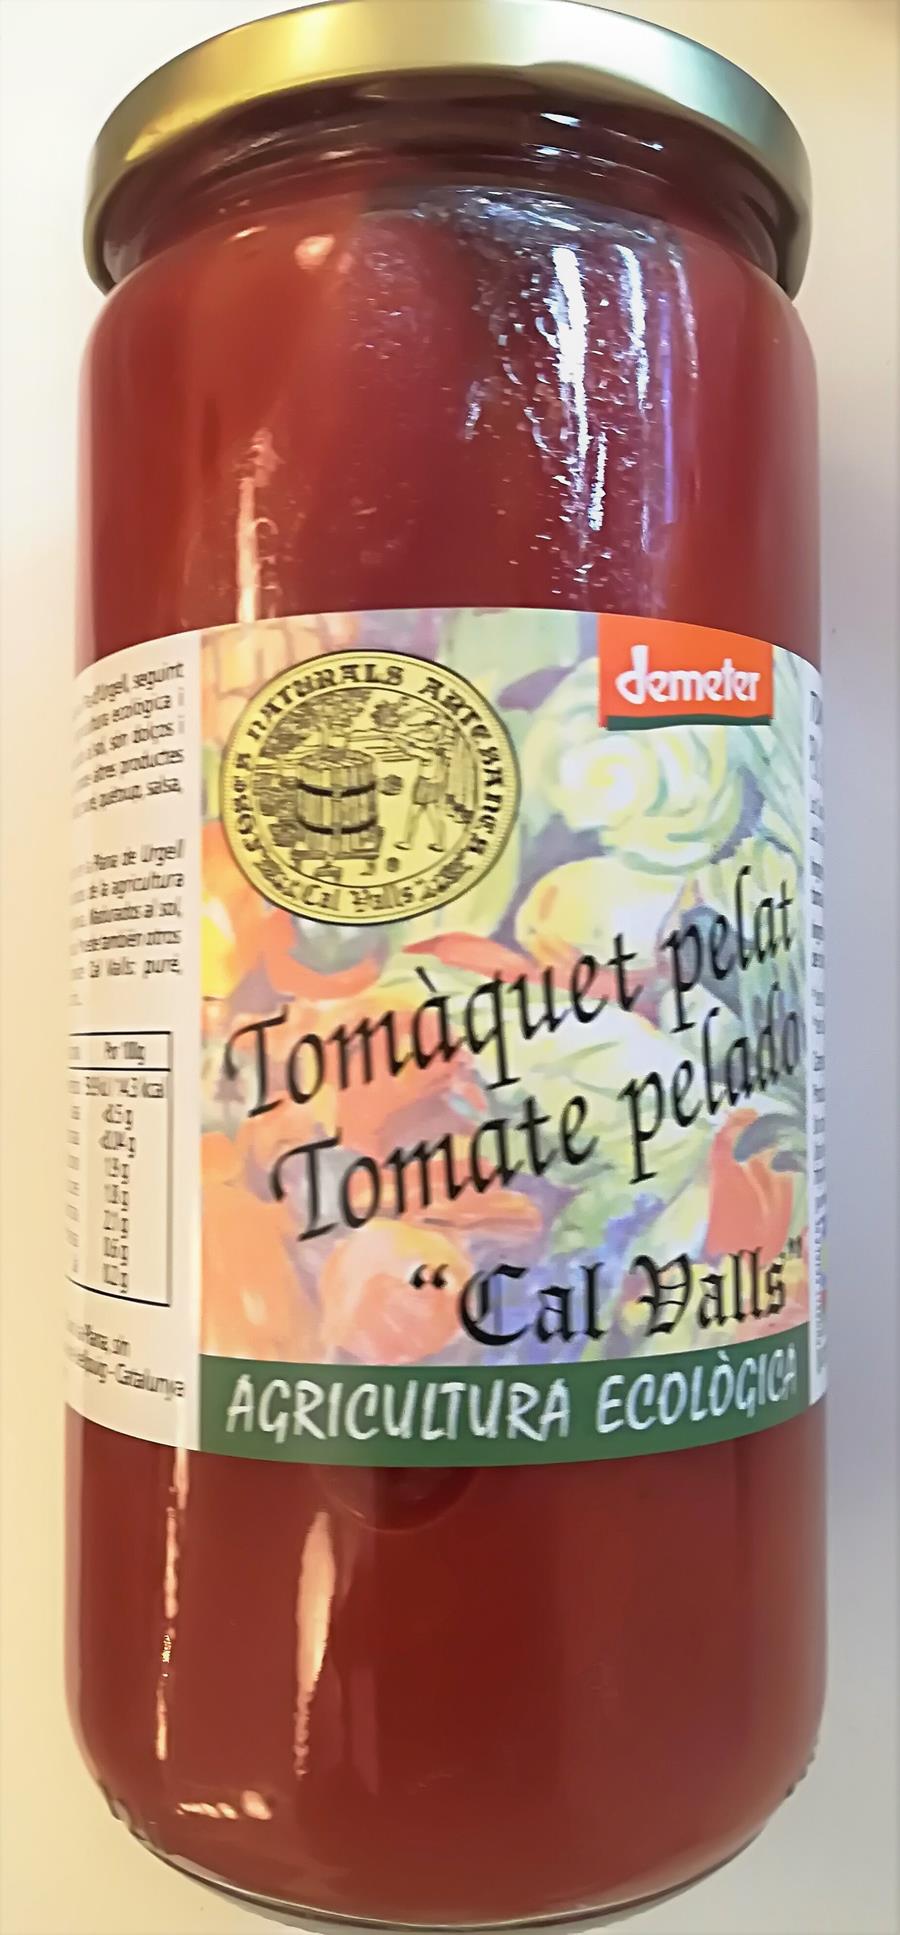 Tomaquet pelat - Tomate pelado entero Eco (660gr) CALL VALS | F- 131019 | MUNDO ECOLÓGICO